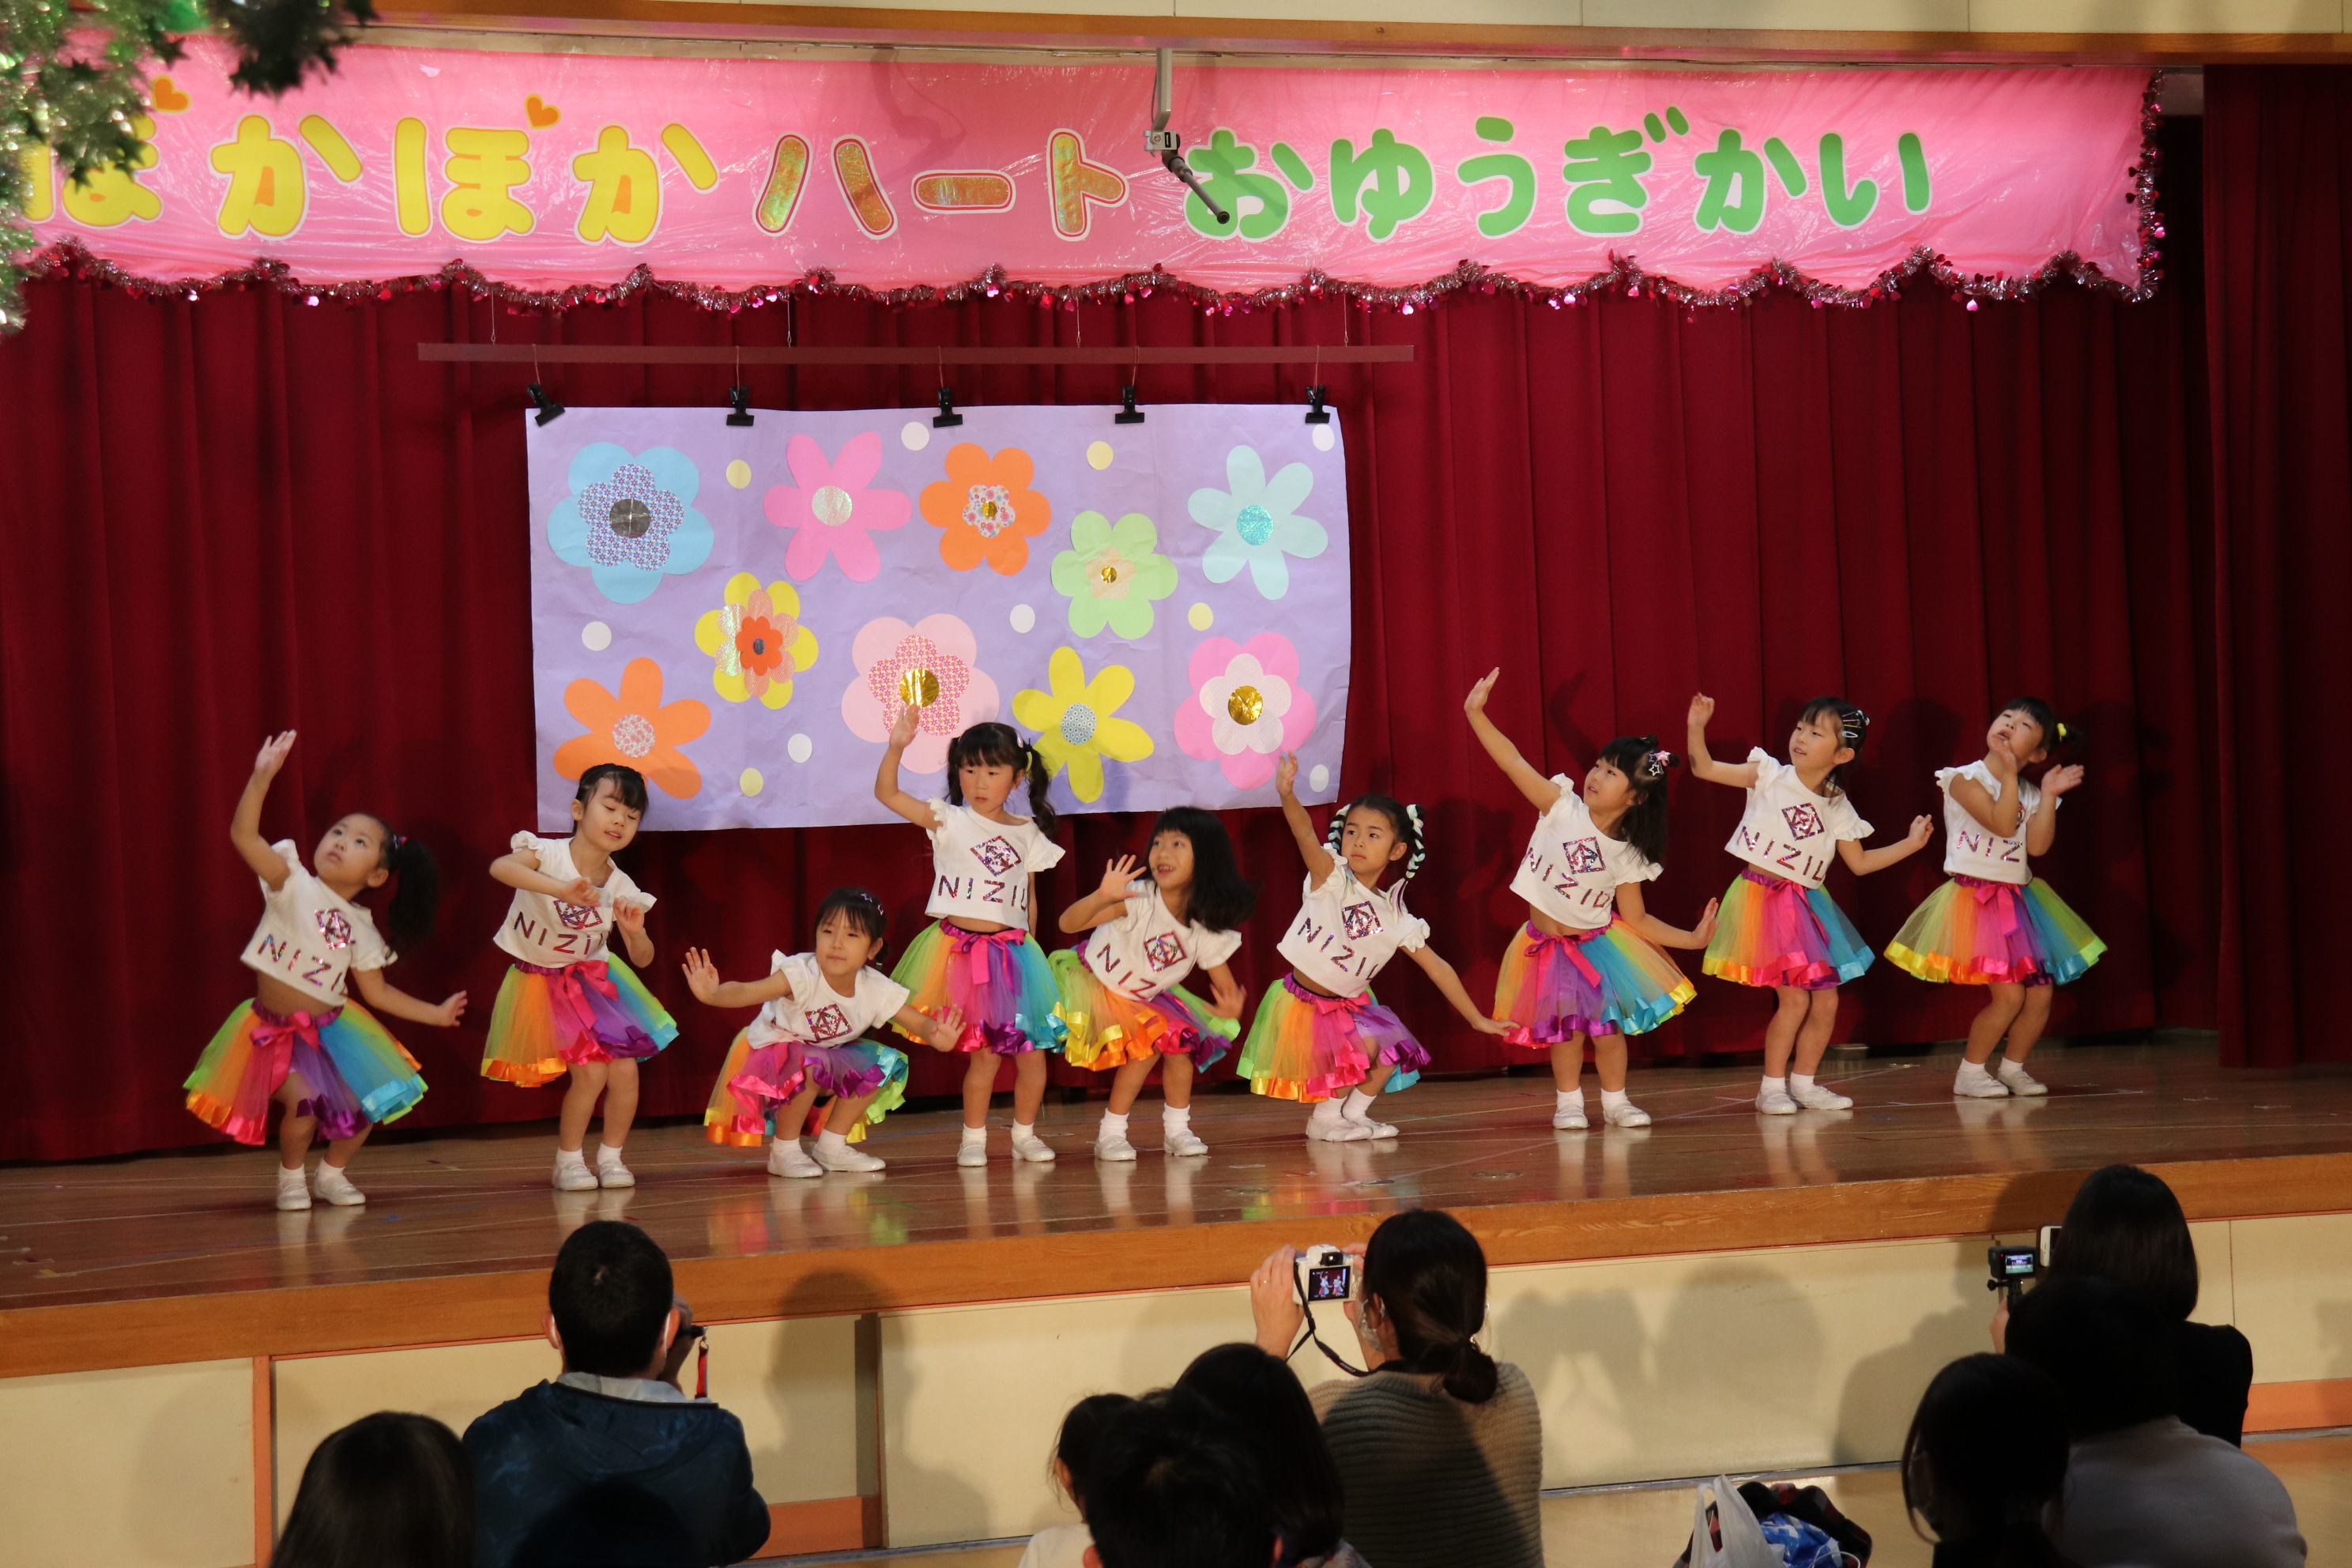 第44回おゆうぎ会 さくら 白梅幼稚園は埼玉県入間市の幼稚園です